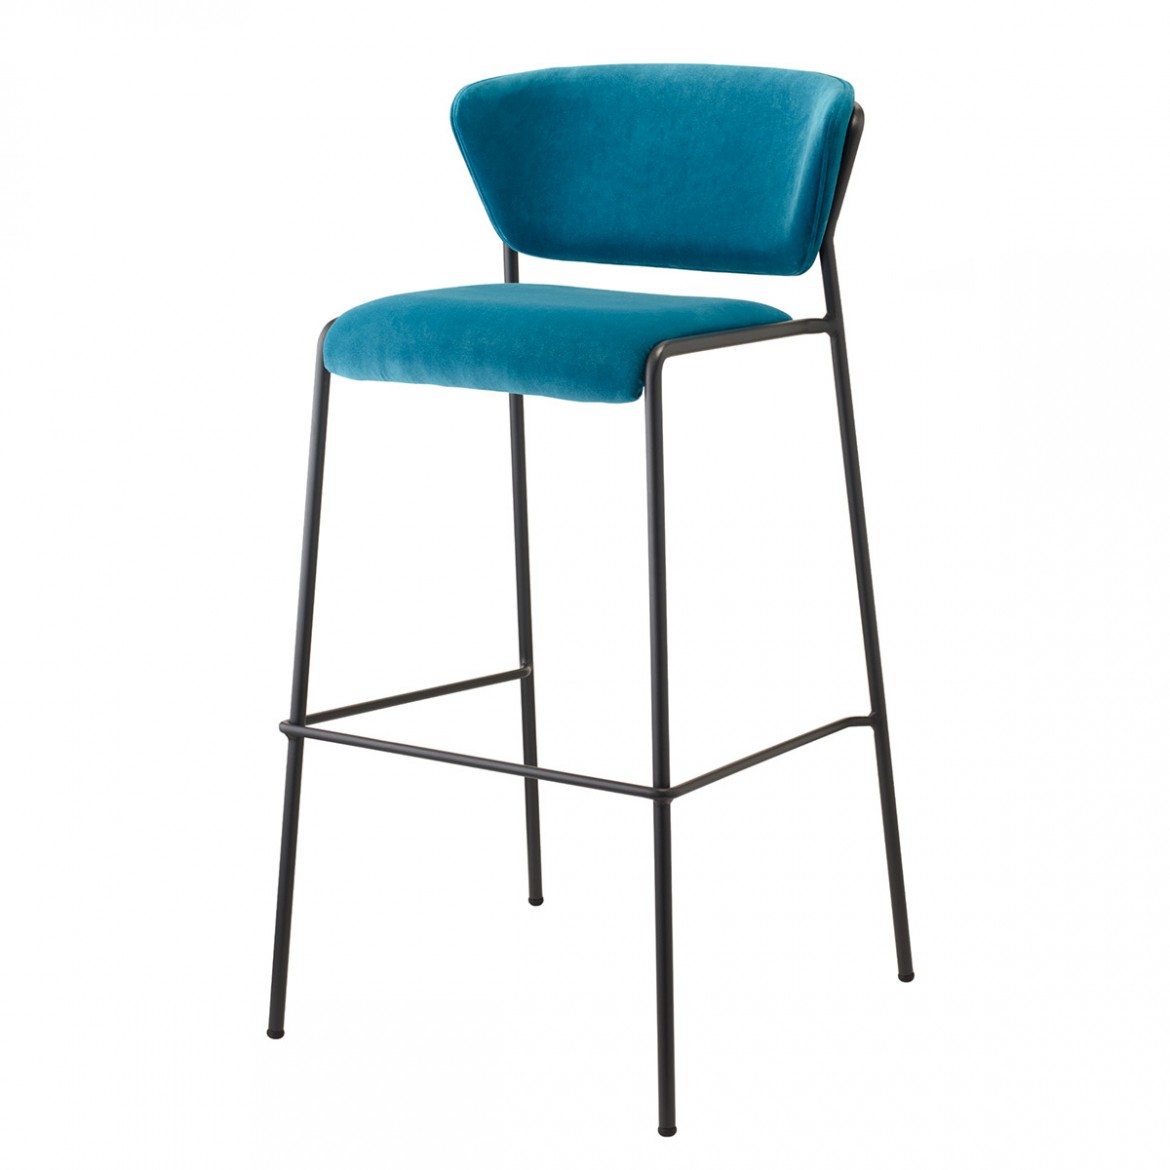 σκαμπό καρέκλα Lisa εμπνευσμένο από 50’s - 60’s, με πλάτη, σε χρώμα μπλε